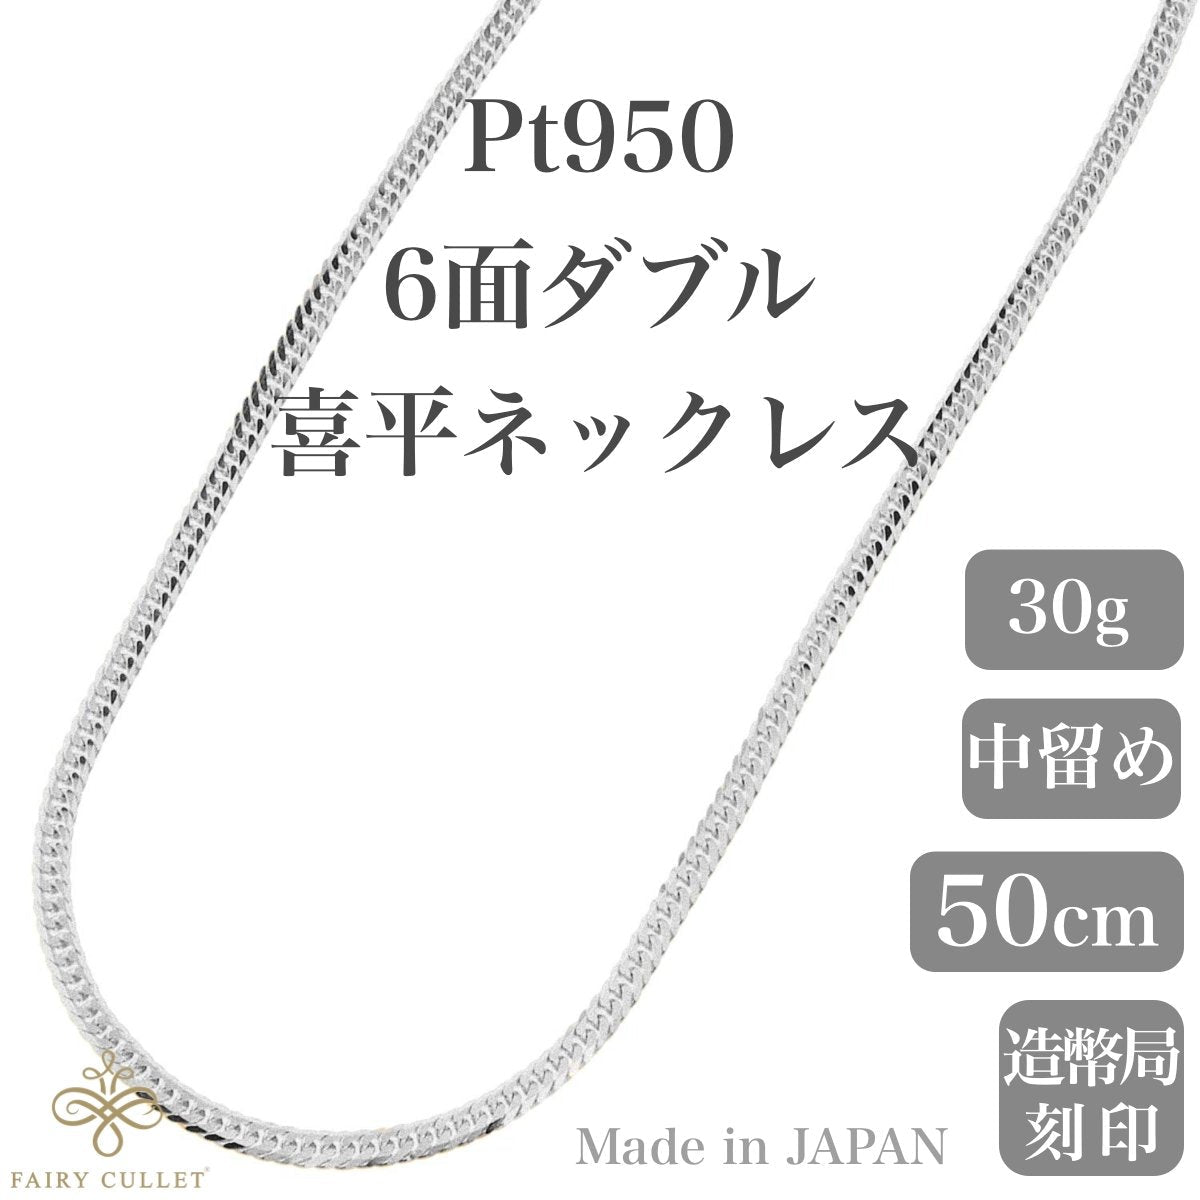 プラチナネックレス Pt950 6面W喜平チェーン 日本製 検定印 30g 50cm 